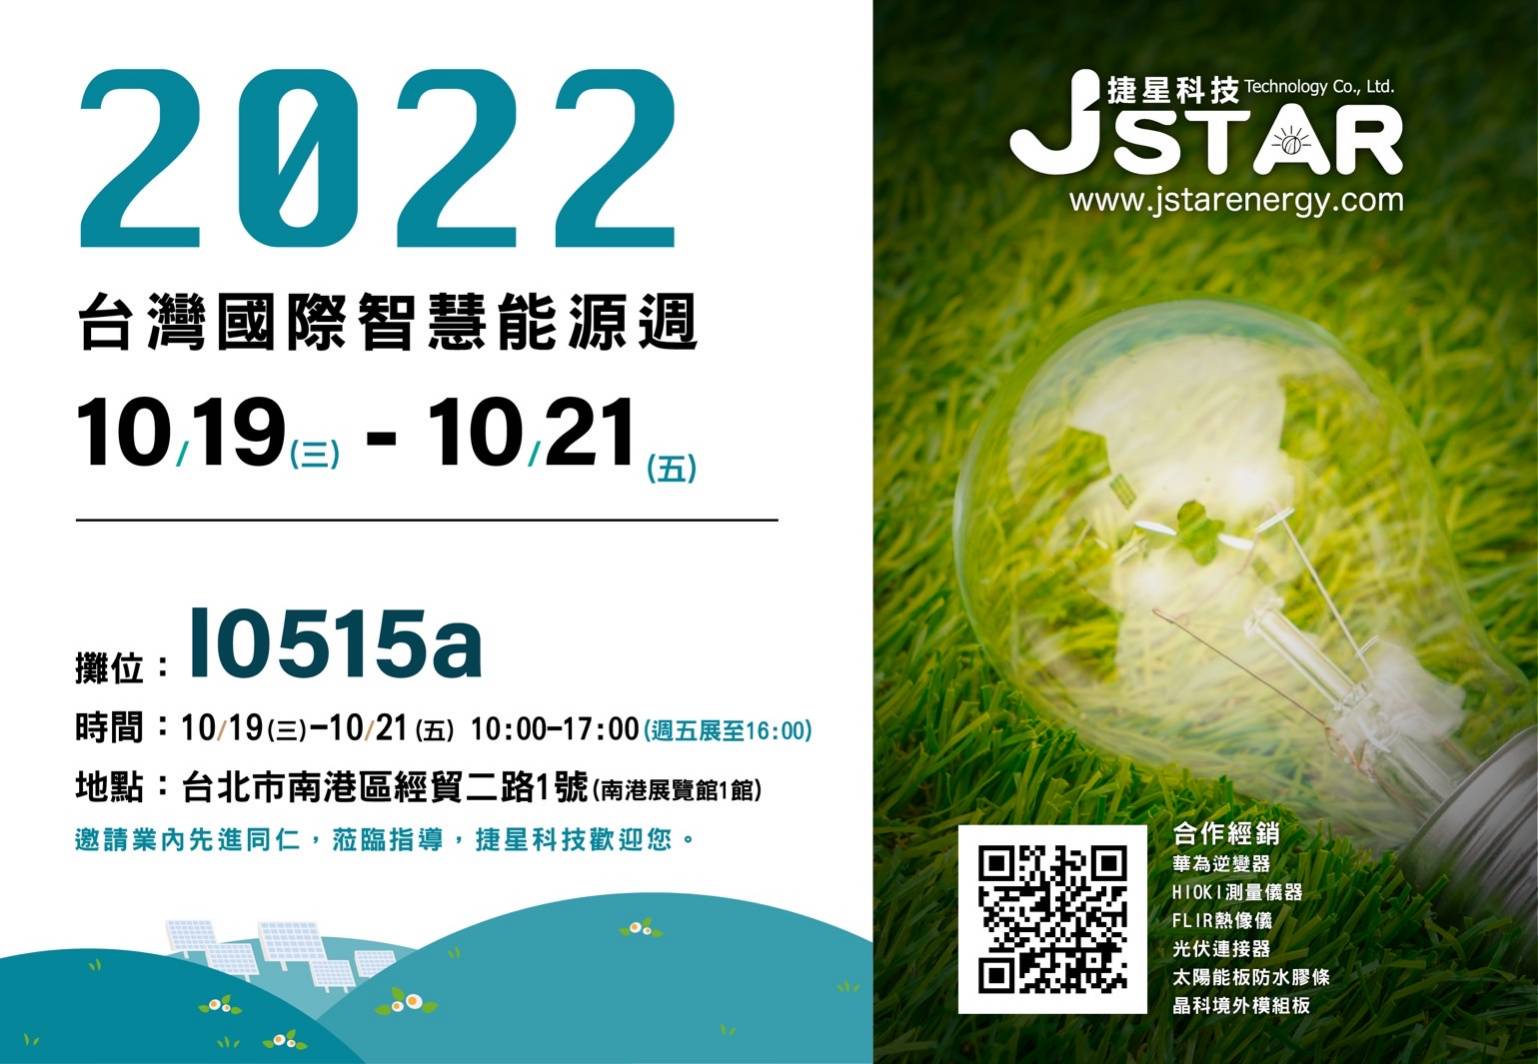 2022年台灣國際智慧能源週 | 捷星科技參展 | 太陽能材料供應商